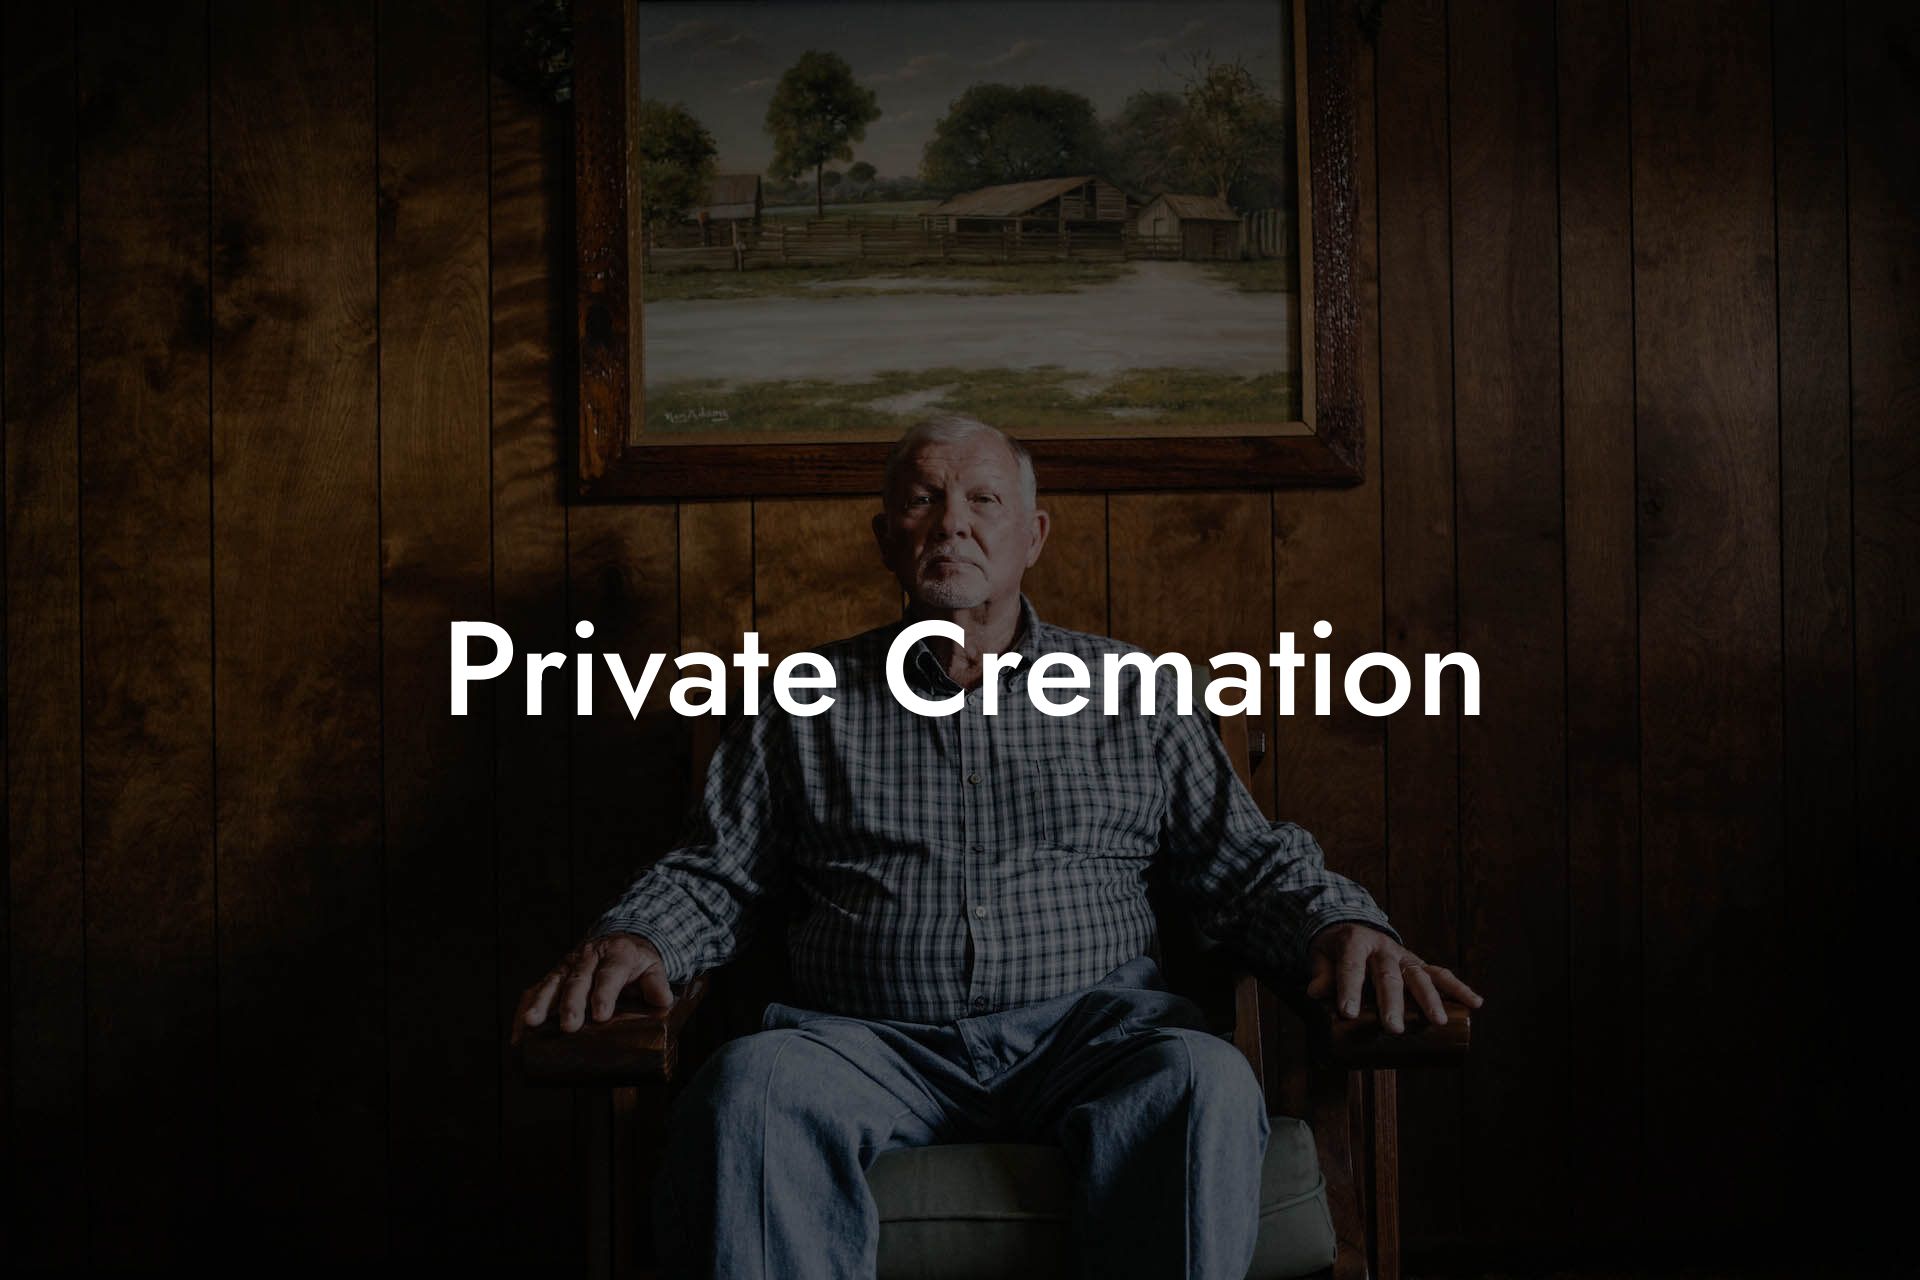 Private Cremation